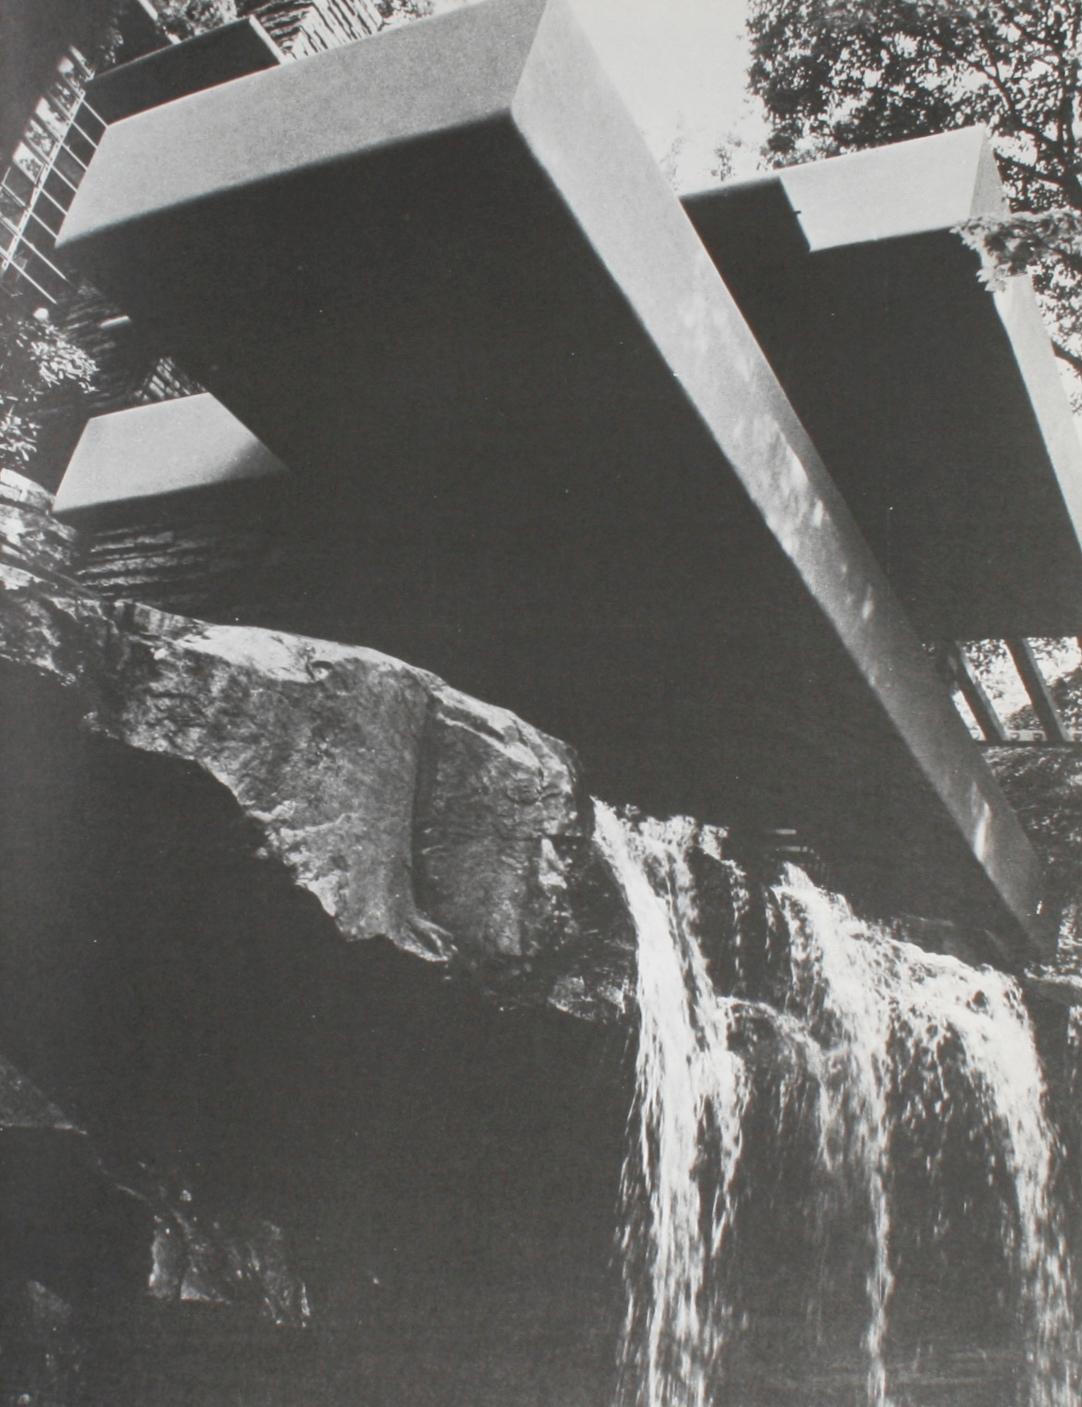 Frank Lloyd Wright (20th Century Masters Series) par MarCo Dezzi Bardeschi. Couverture rigide avec jaquette. 94 pages. 44 illustrations en couleur sur des planches recto-verso et 33 illustrations en noir et blanc. Un regard sur la vie et l'œuvre du